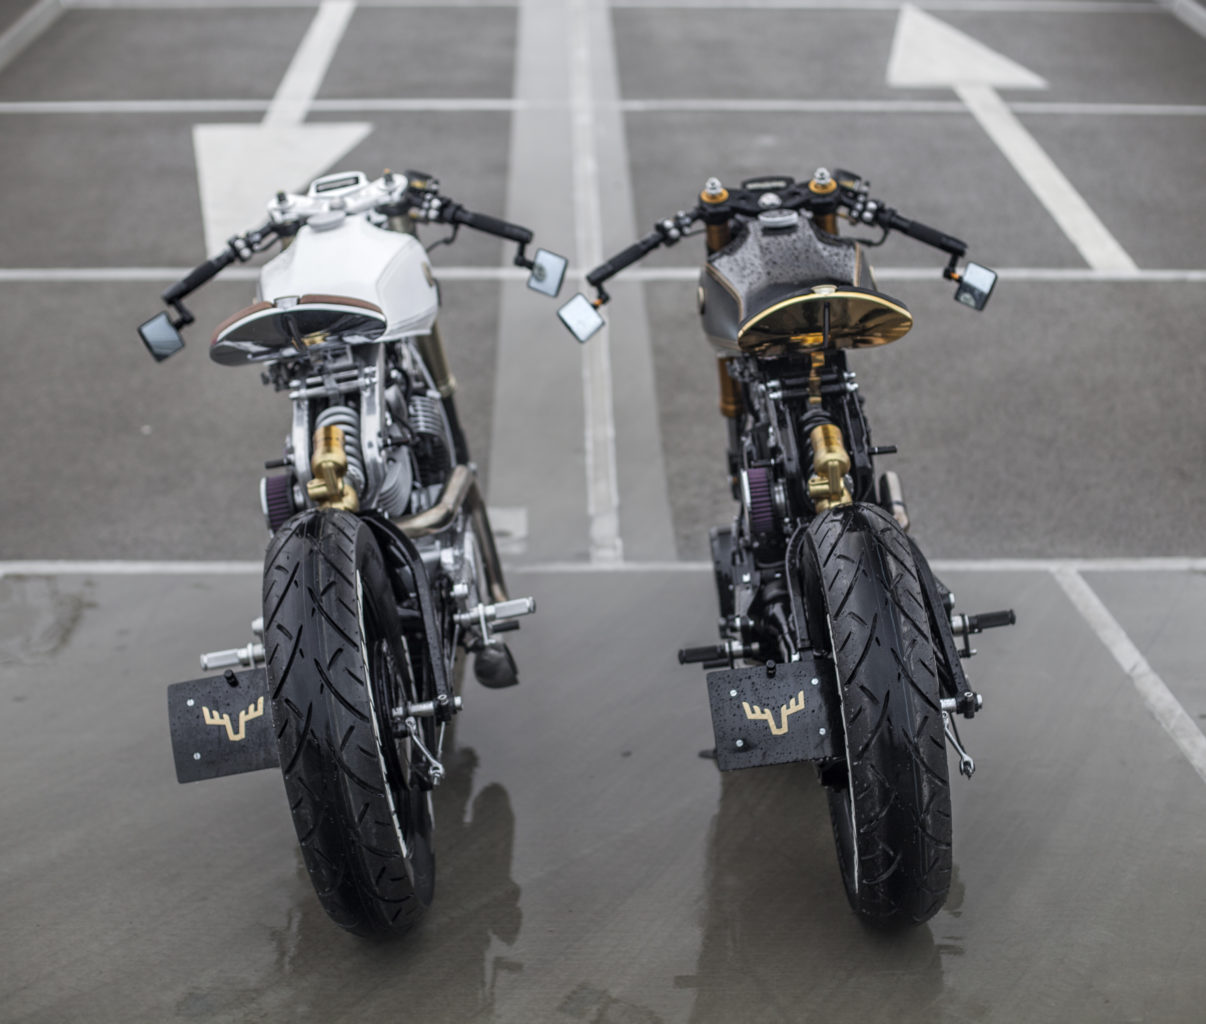 Yamaha XV920 Virago "Twins" by Moose Motodesign